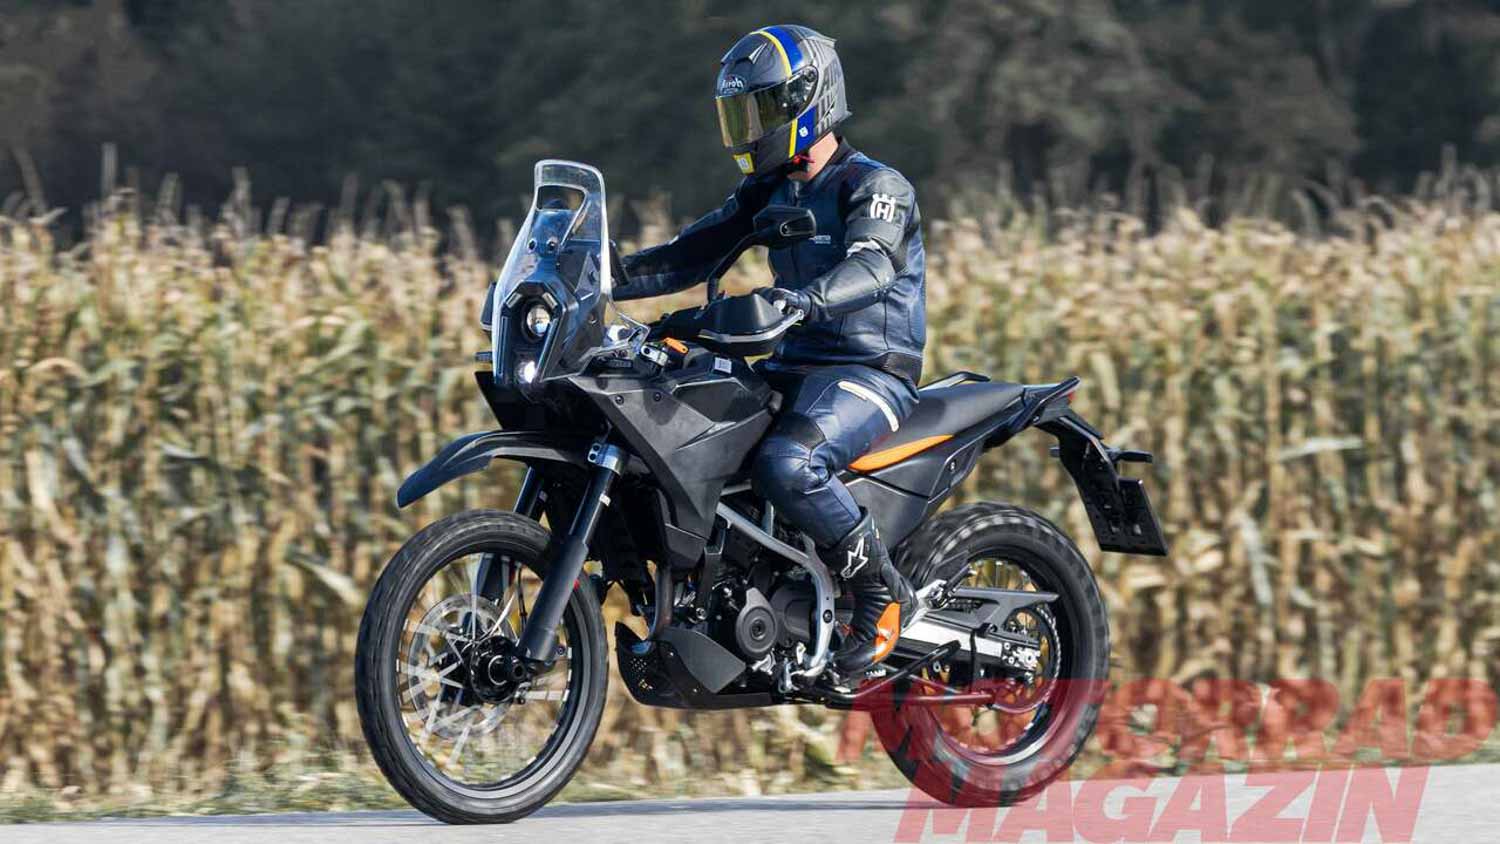 New-gen KTM Duke 125 globally unveiled